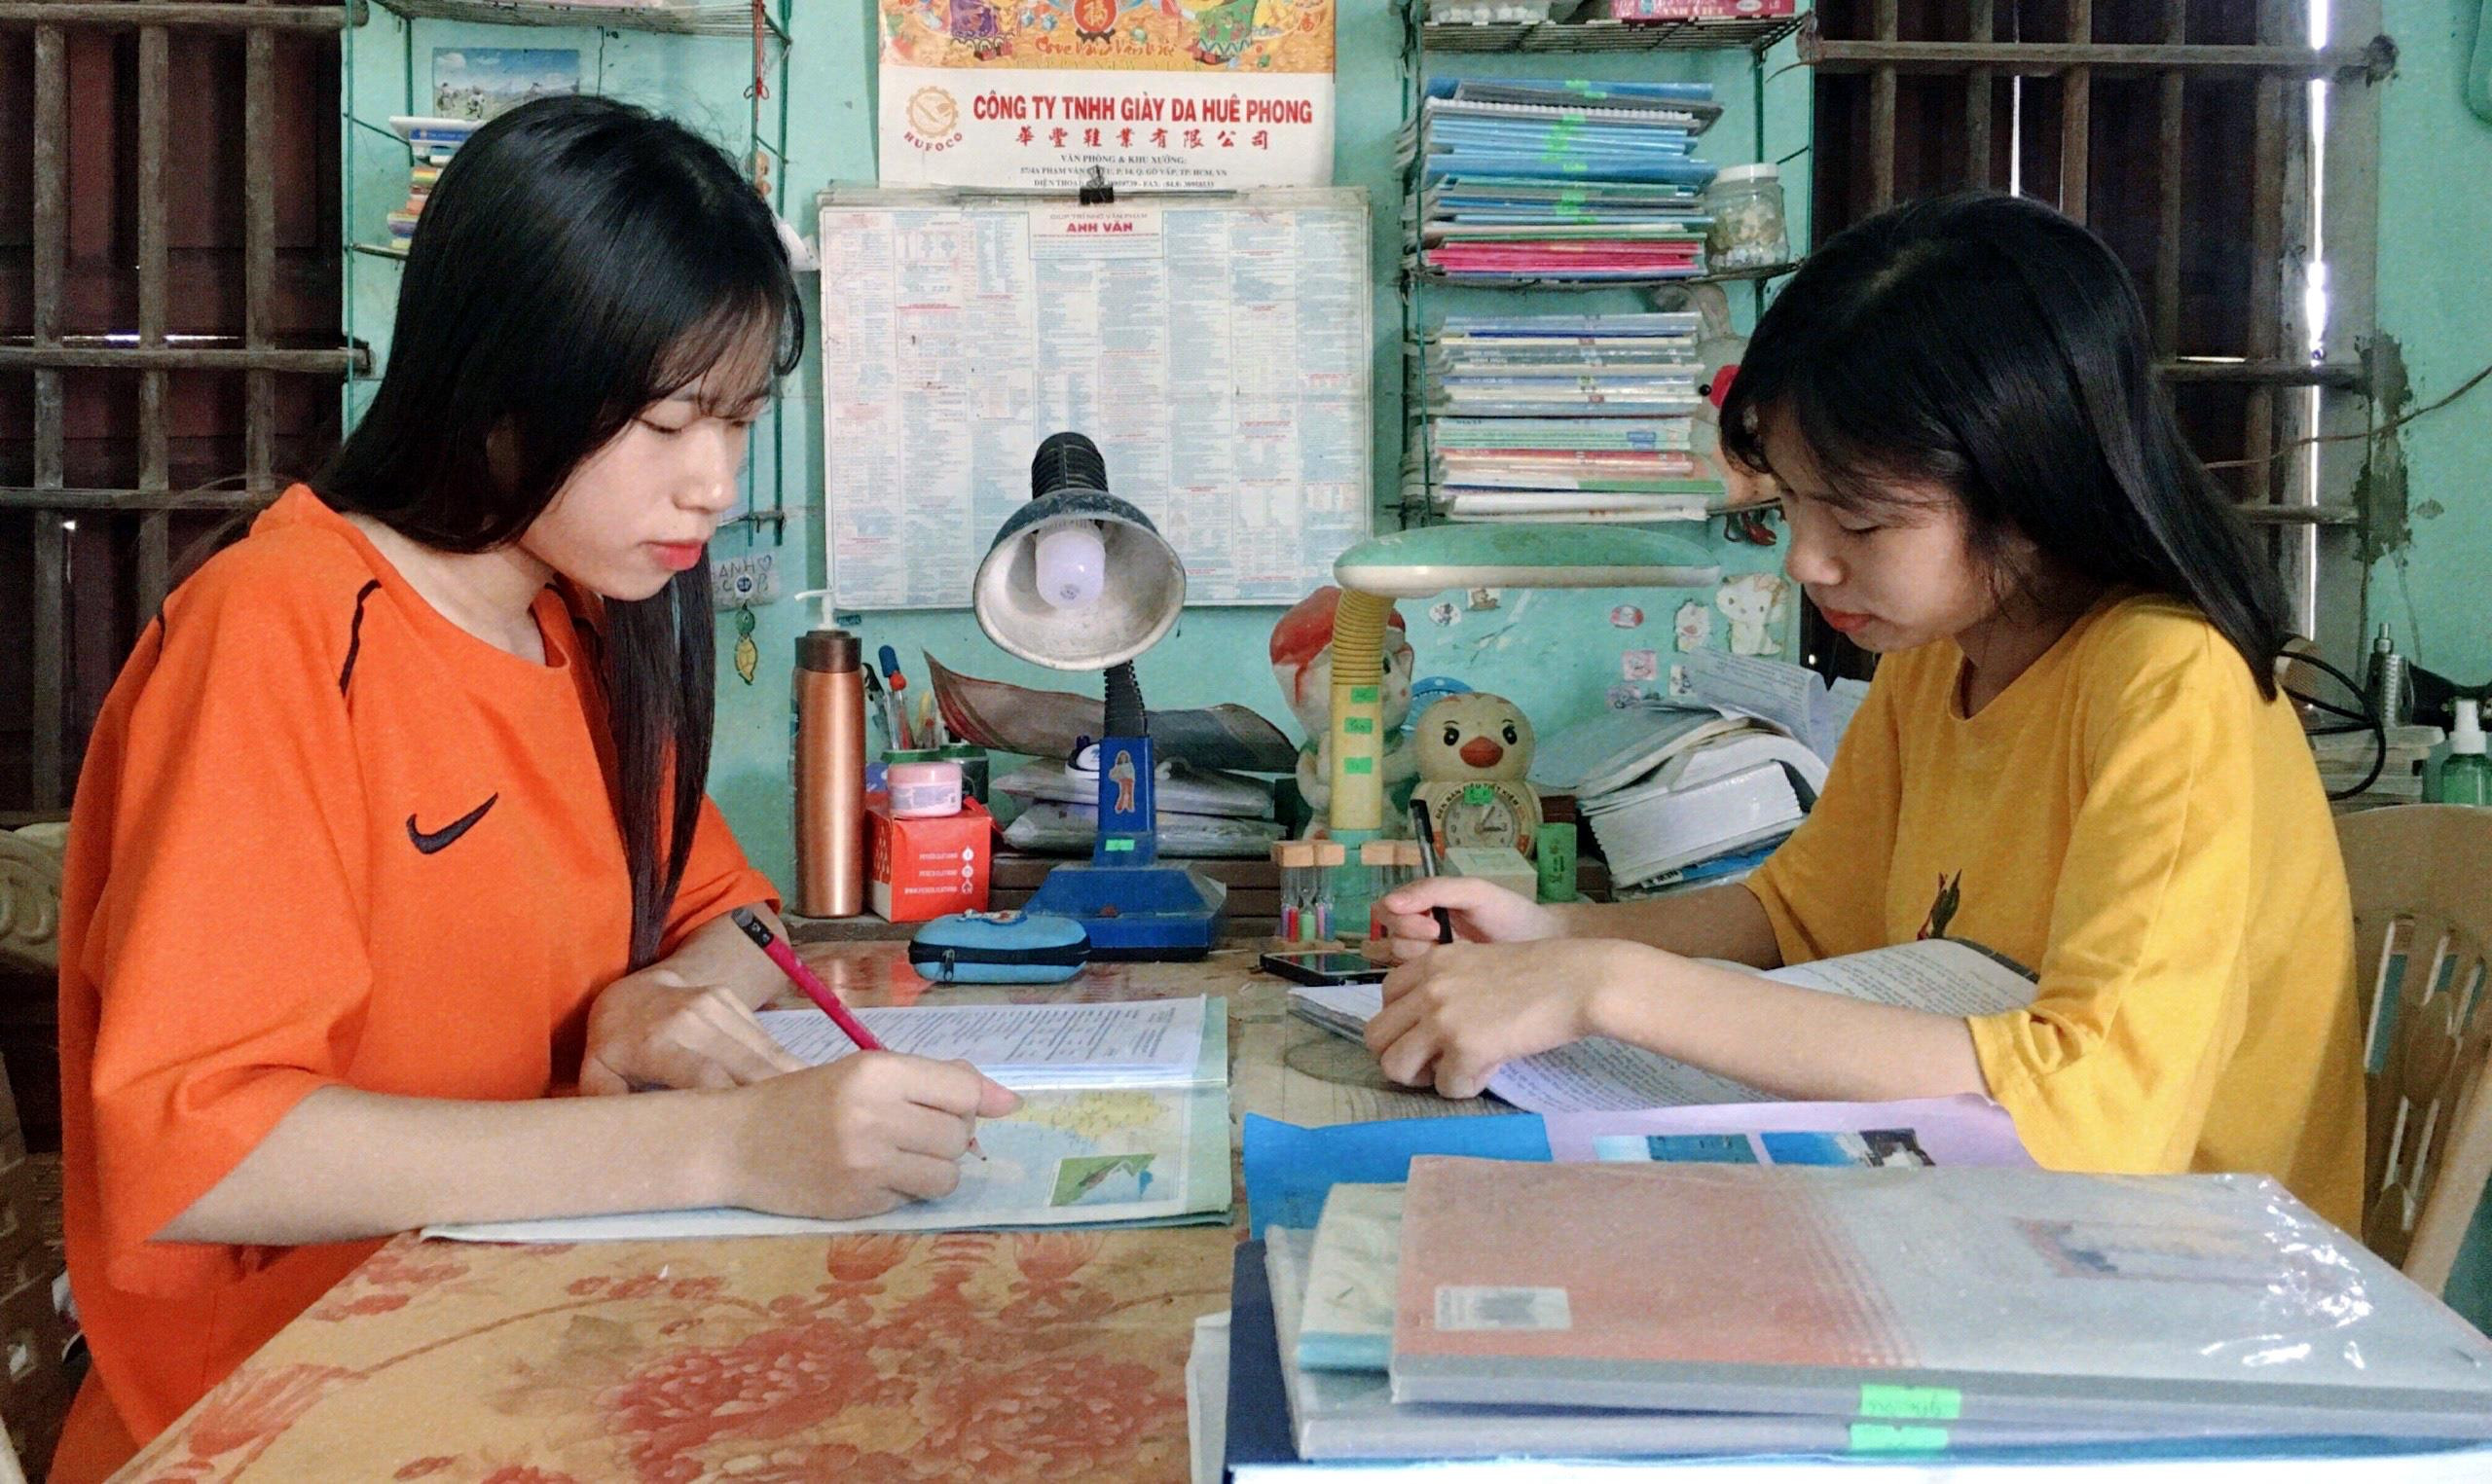 Tuy đã thi song nhưng hai chị em Thanh, Thúy vẫn nghiên cứu học tập